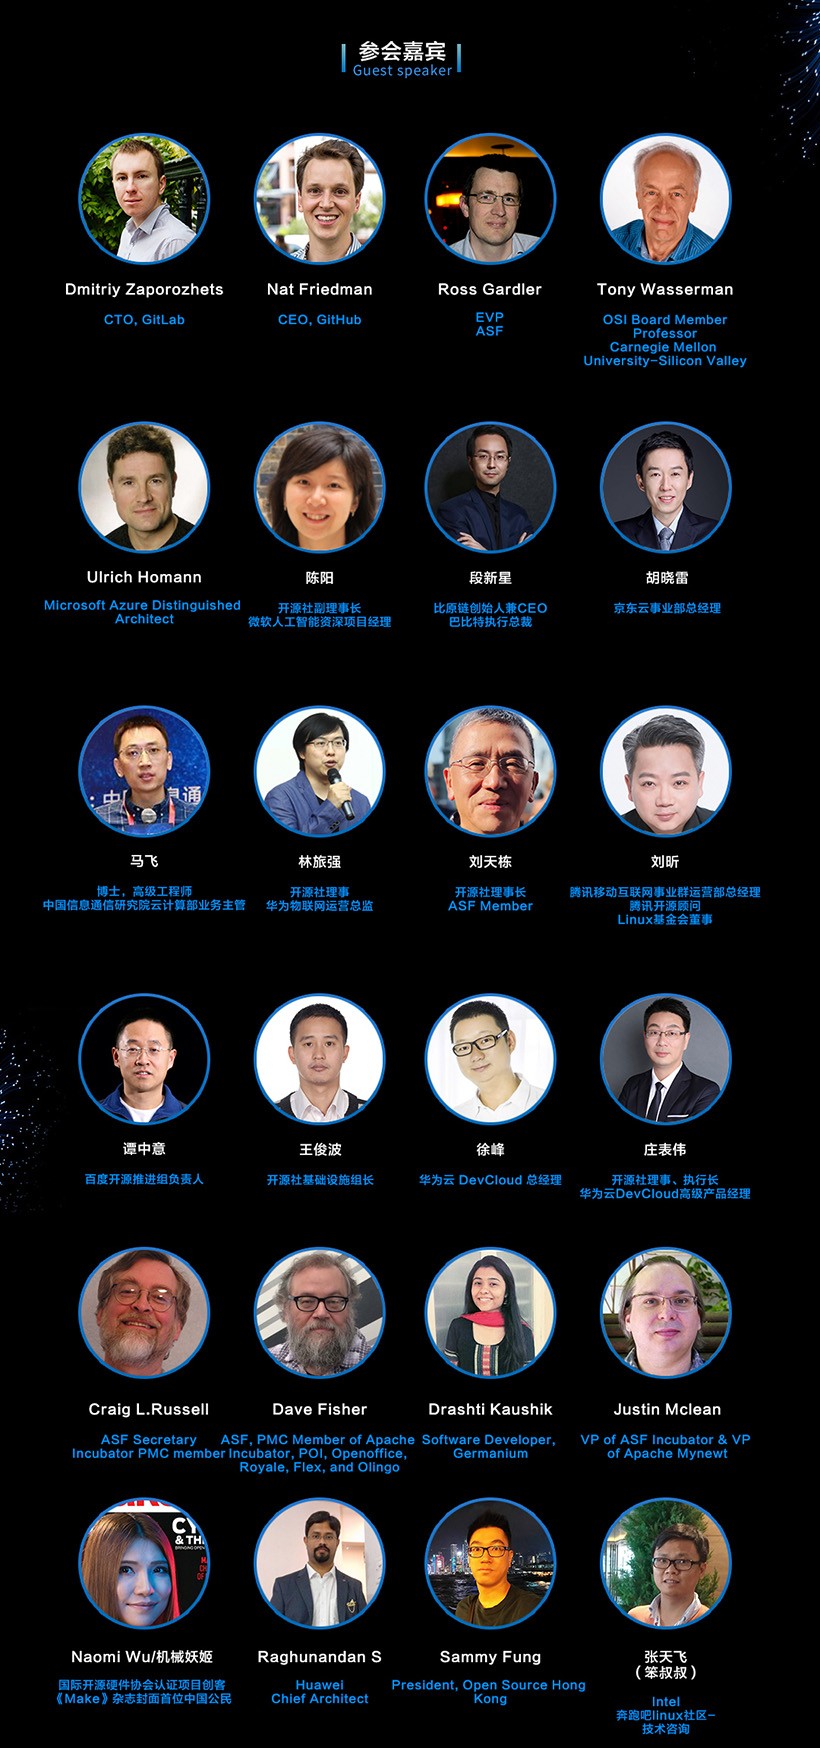 优麒麟社区助力《2018中国开源年会 COSCon'18》